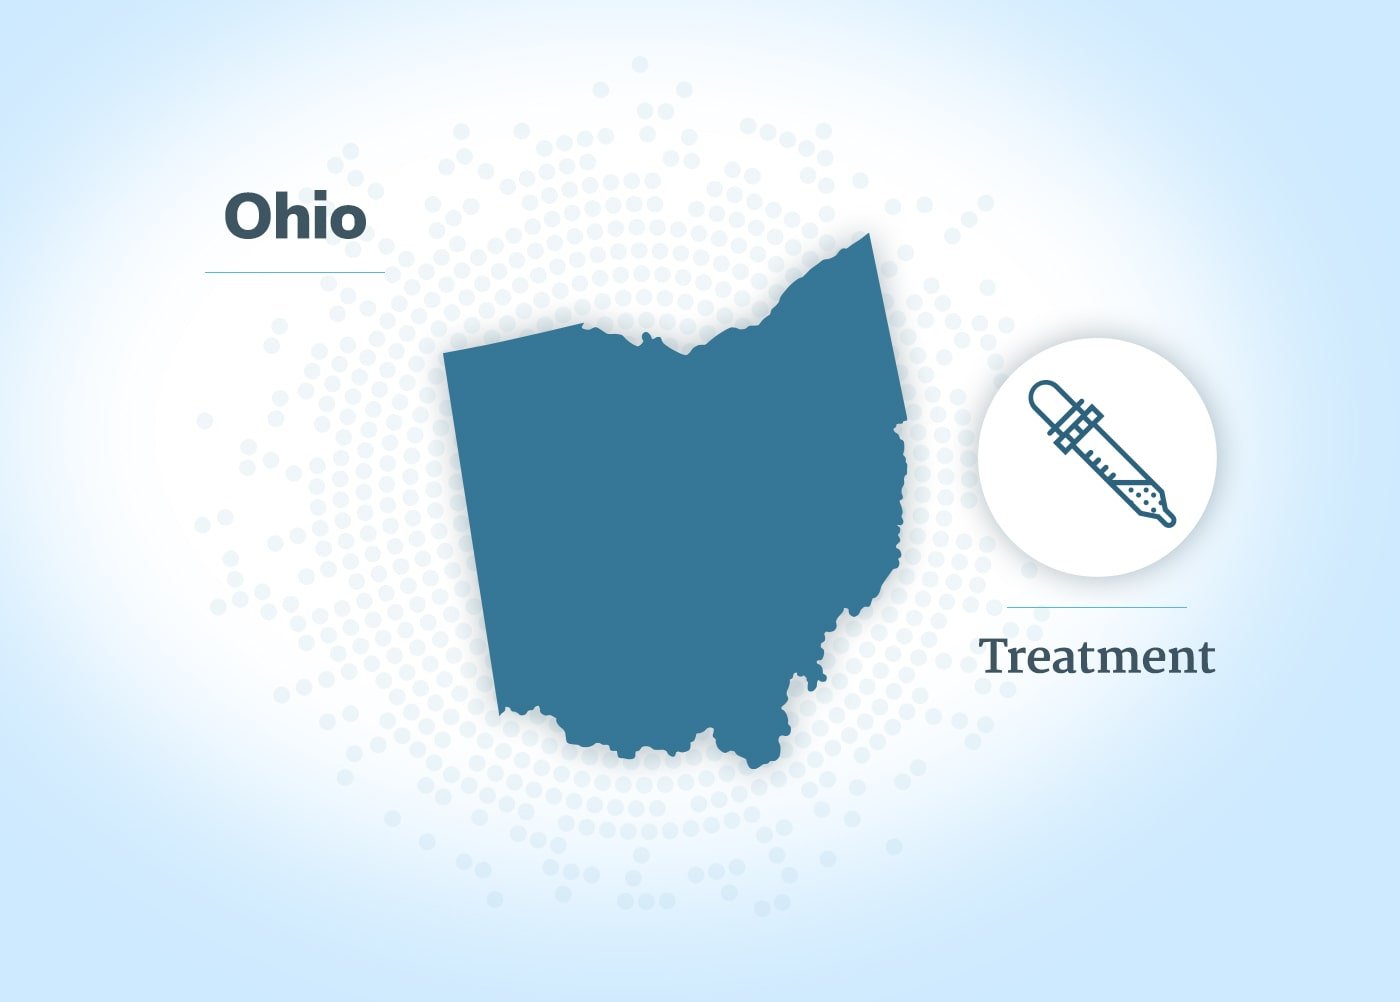 万博专业版俄亥俄州的间皮瘤治疗